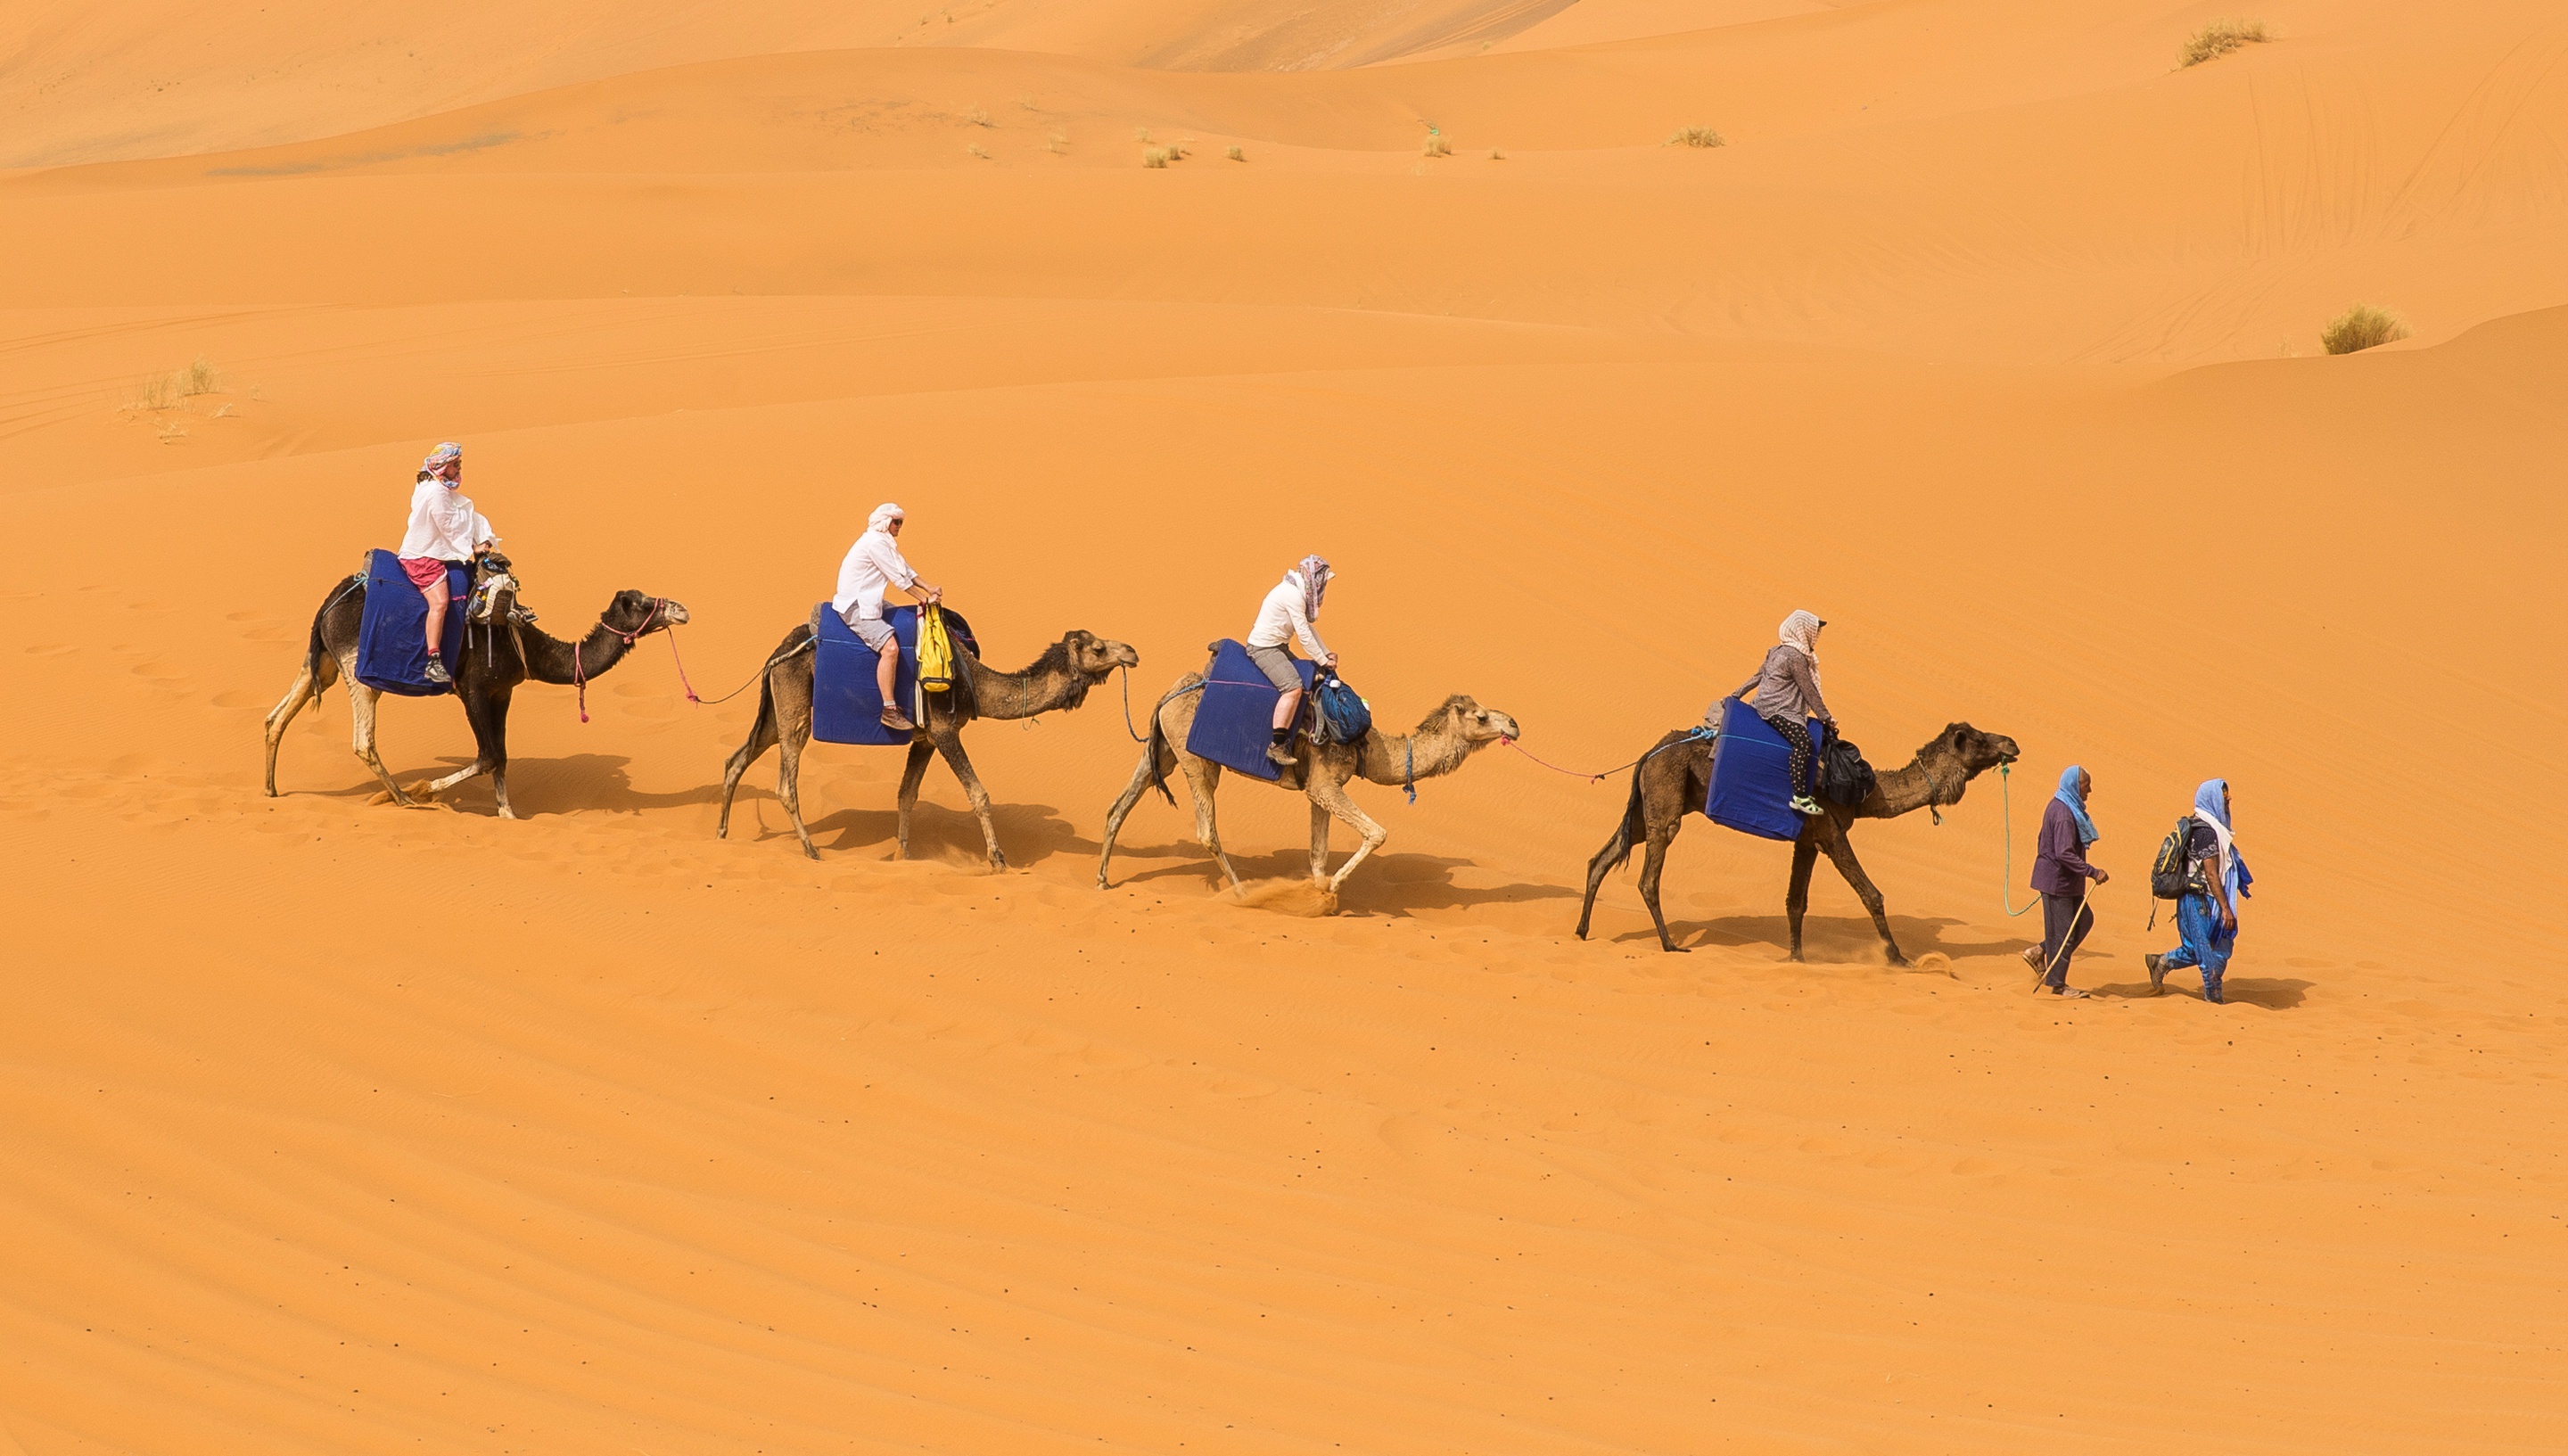 Большой караван. Мехари верблюд. Бедуин на верблюде. Караван с верблюдами в пустыне. Бедуин с верблюдом в пустыне.